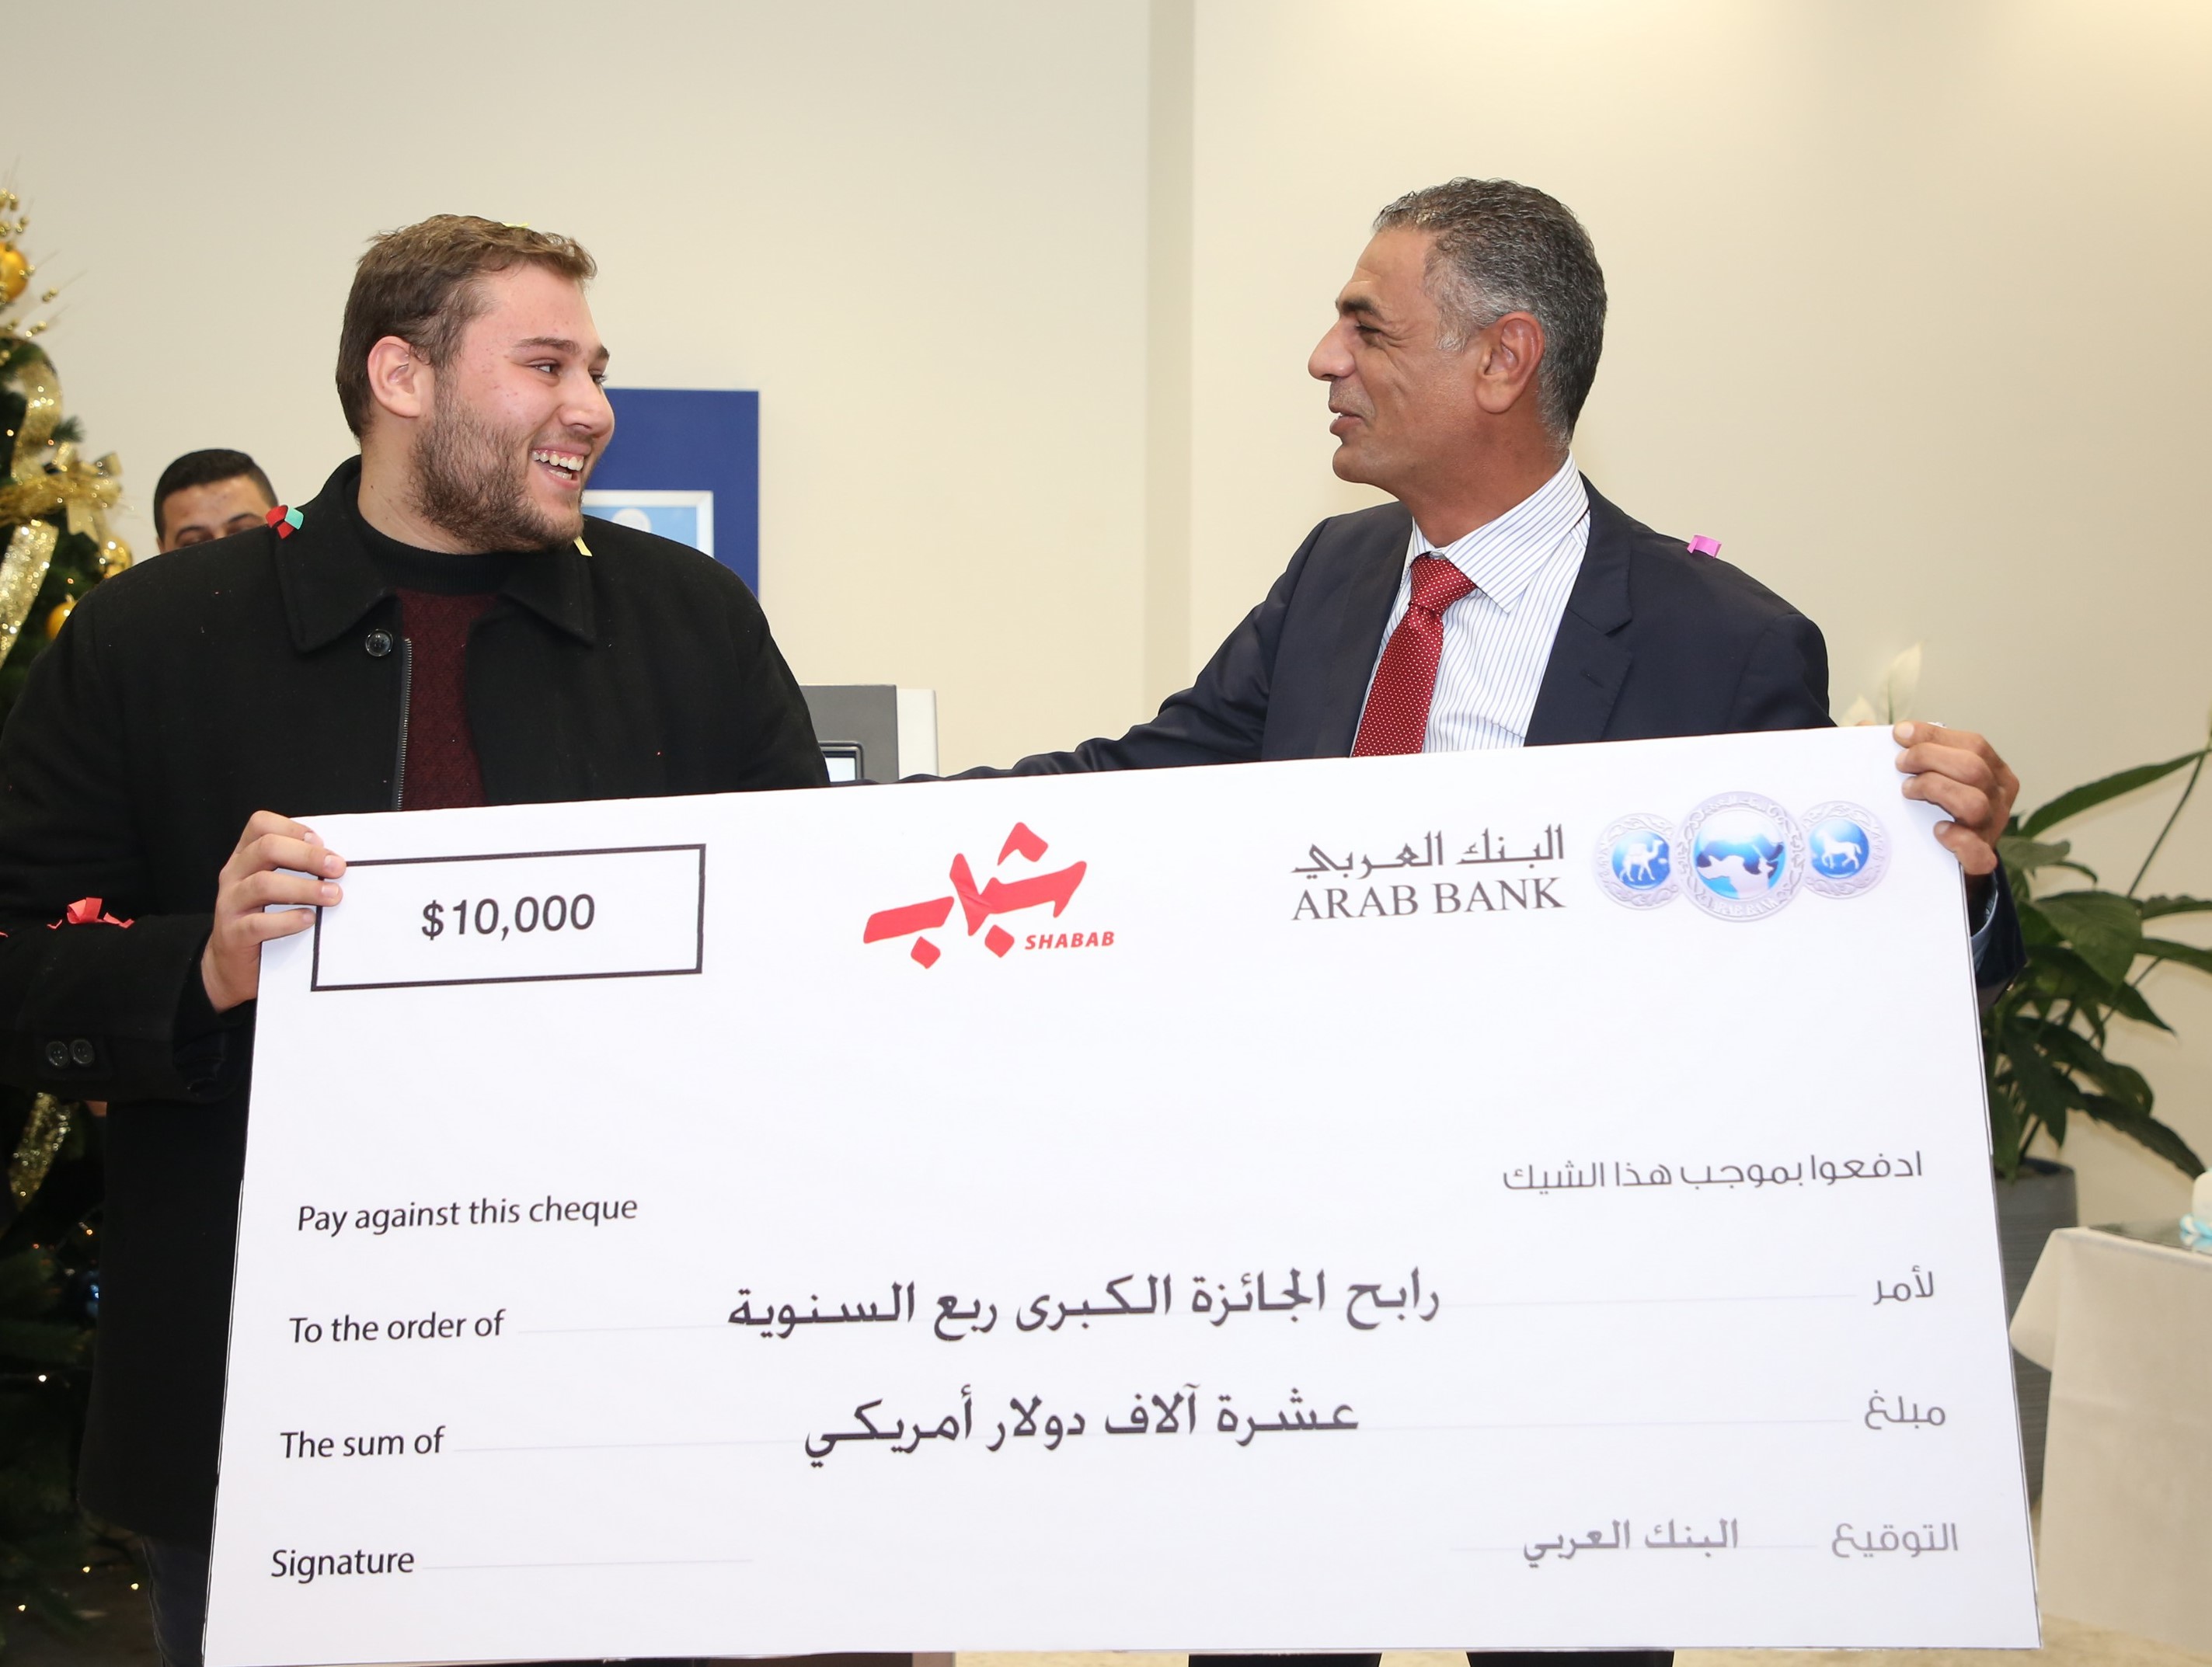 البنك العربي يعلن عن اسم الفائز بالجائزة الكبرى الربع سنوية مع "برنامج شباب"